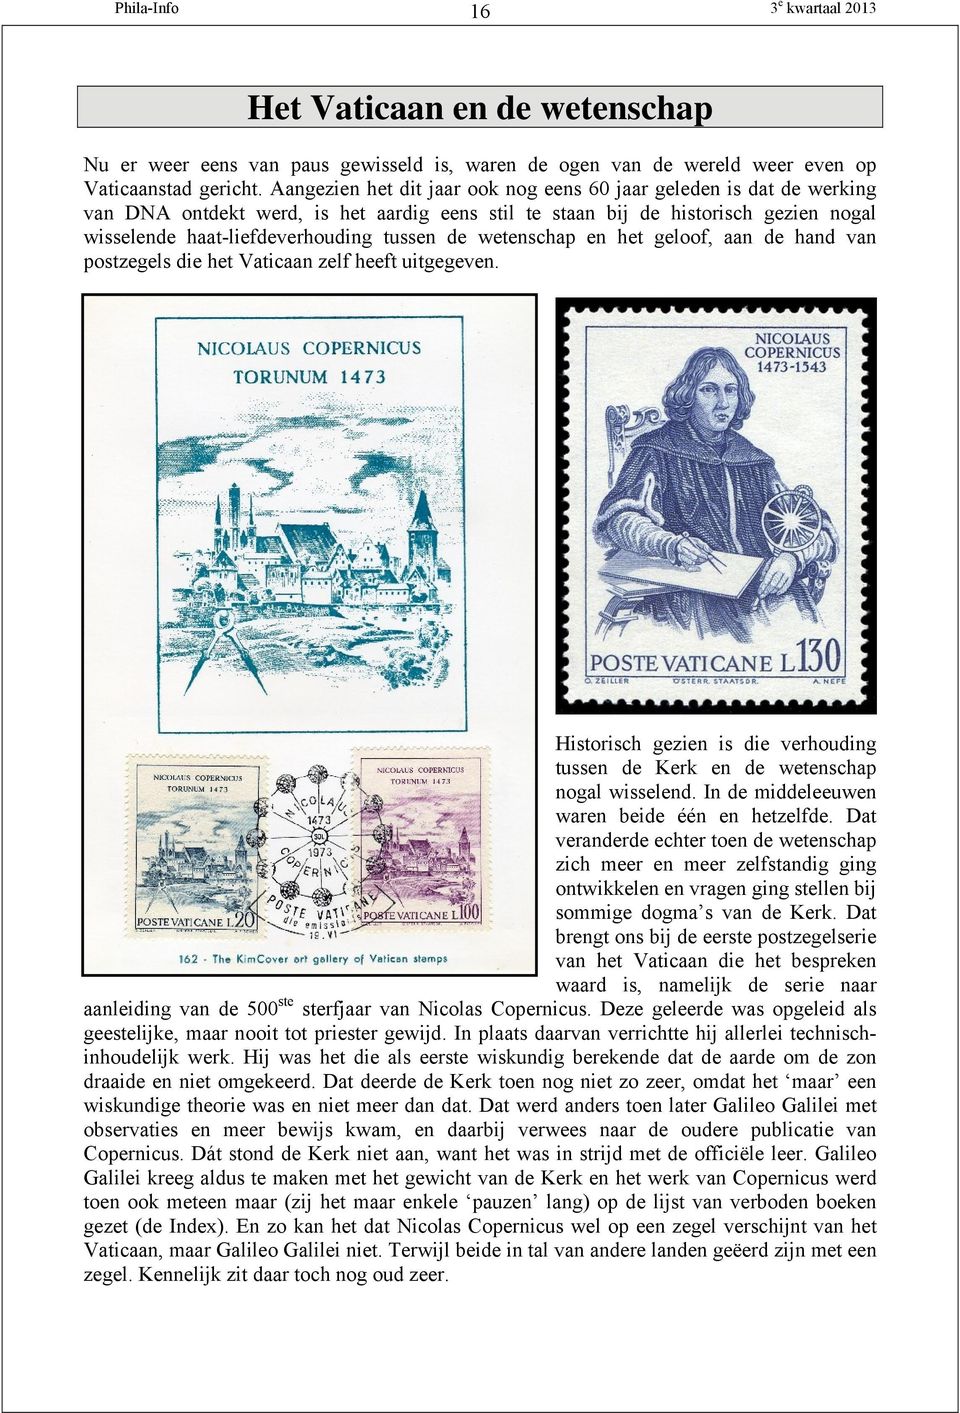 wetenschap en het geloof, aan de hand van postzegels die het Vaticaan zelf heeft uitgegeven. Historisch gezien is die verhouding tussen de Kerk en de wetenschap nogal wisselend.